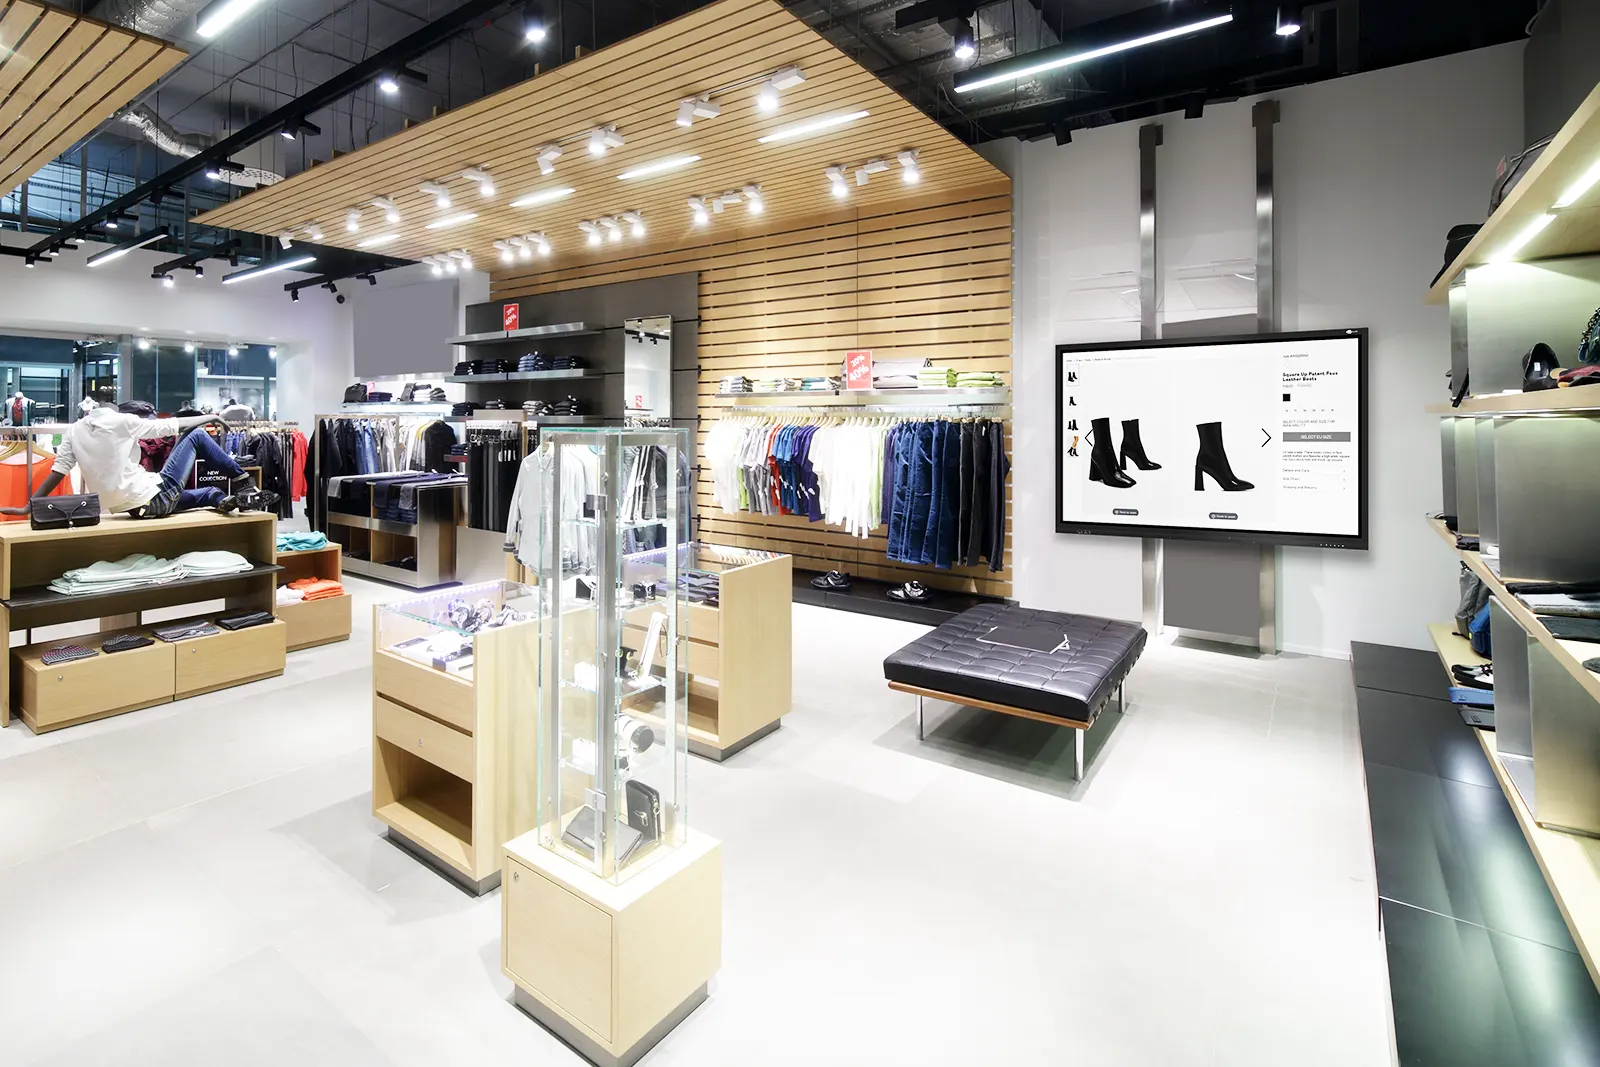 STI- Sector retail - Tienda de ropa con pantalla interactiva